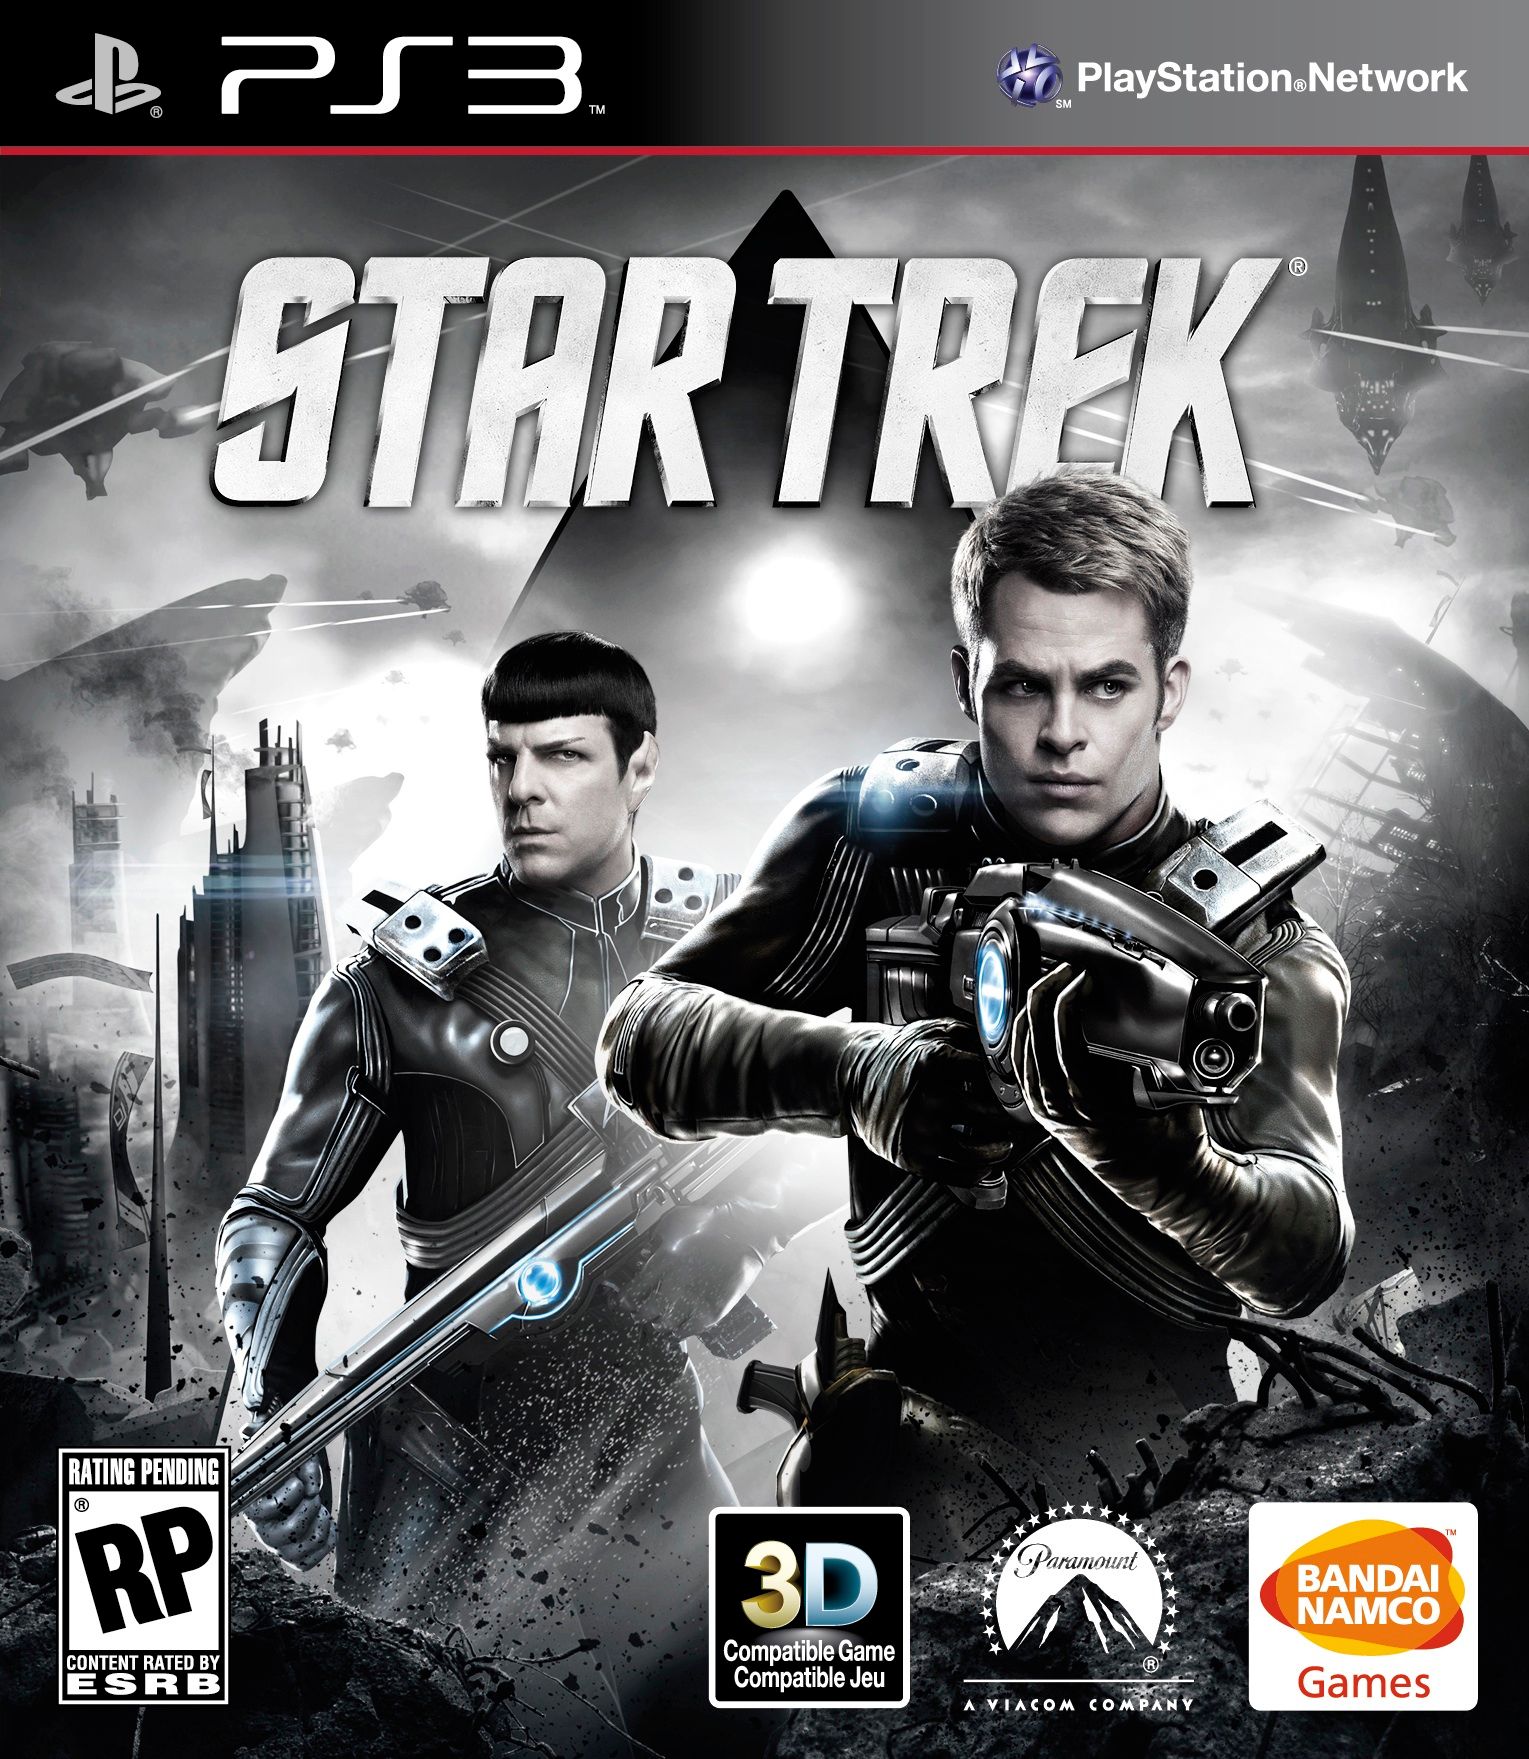 Star Trek The Video Game Cover Art 1